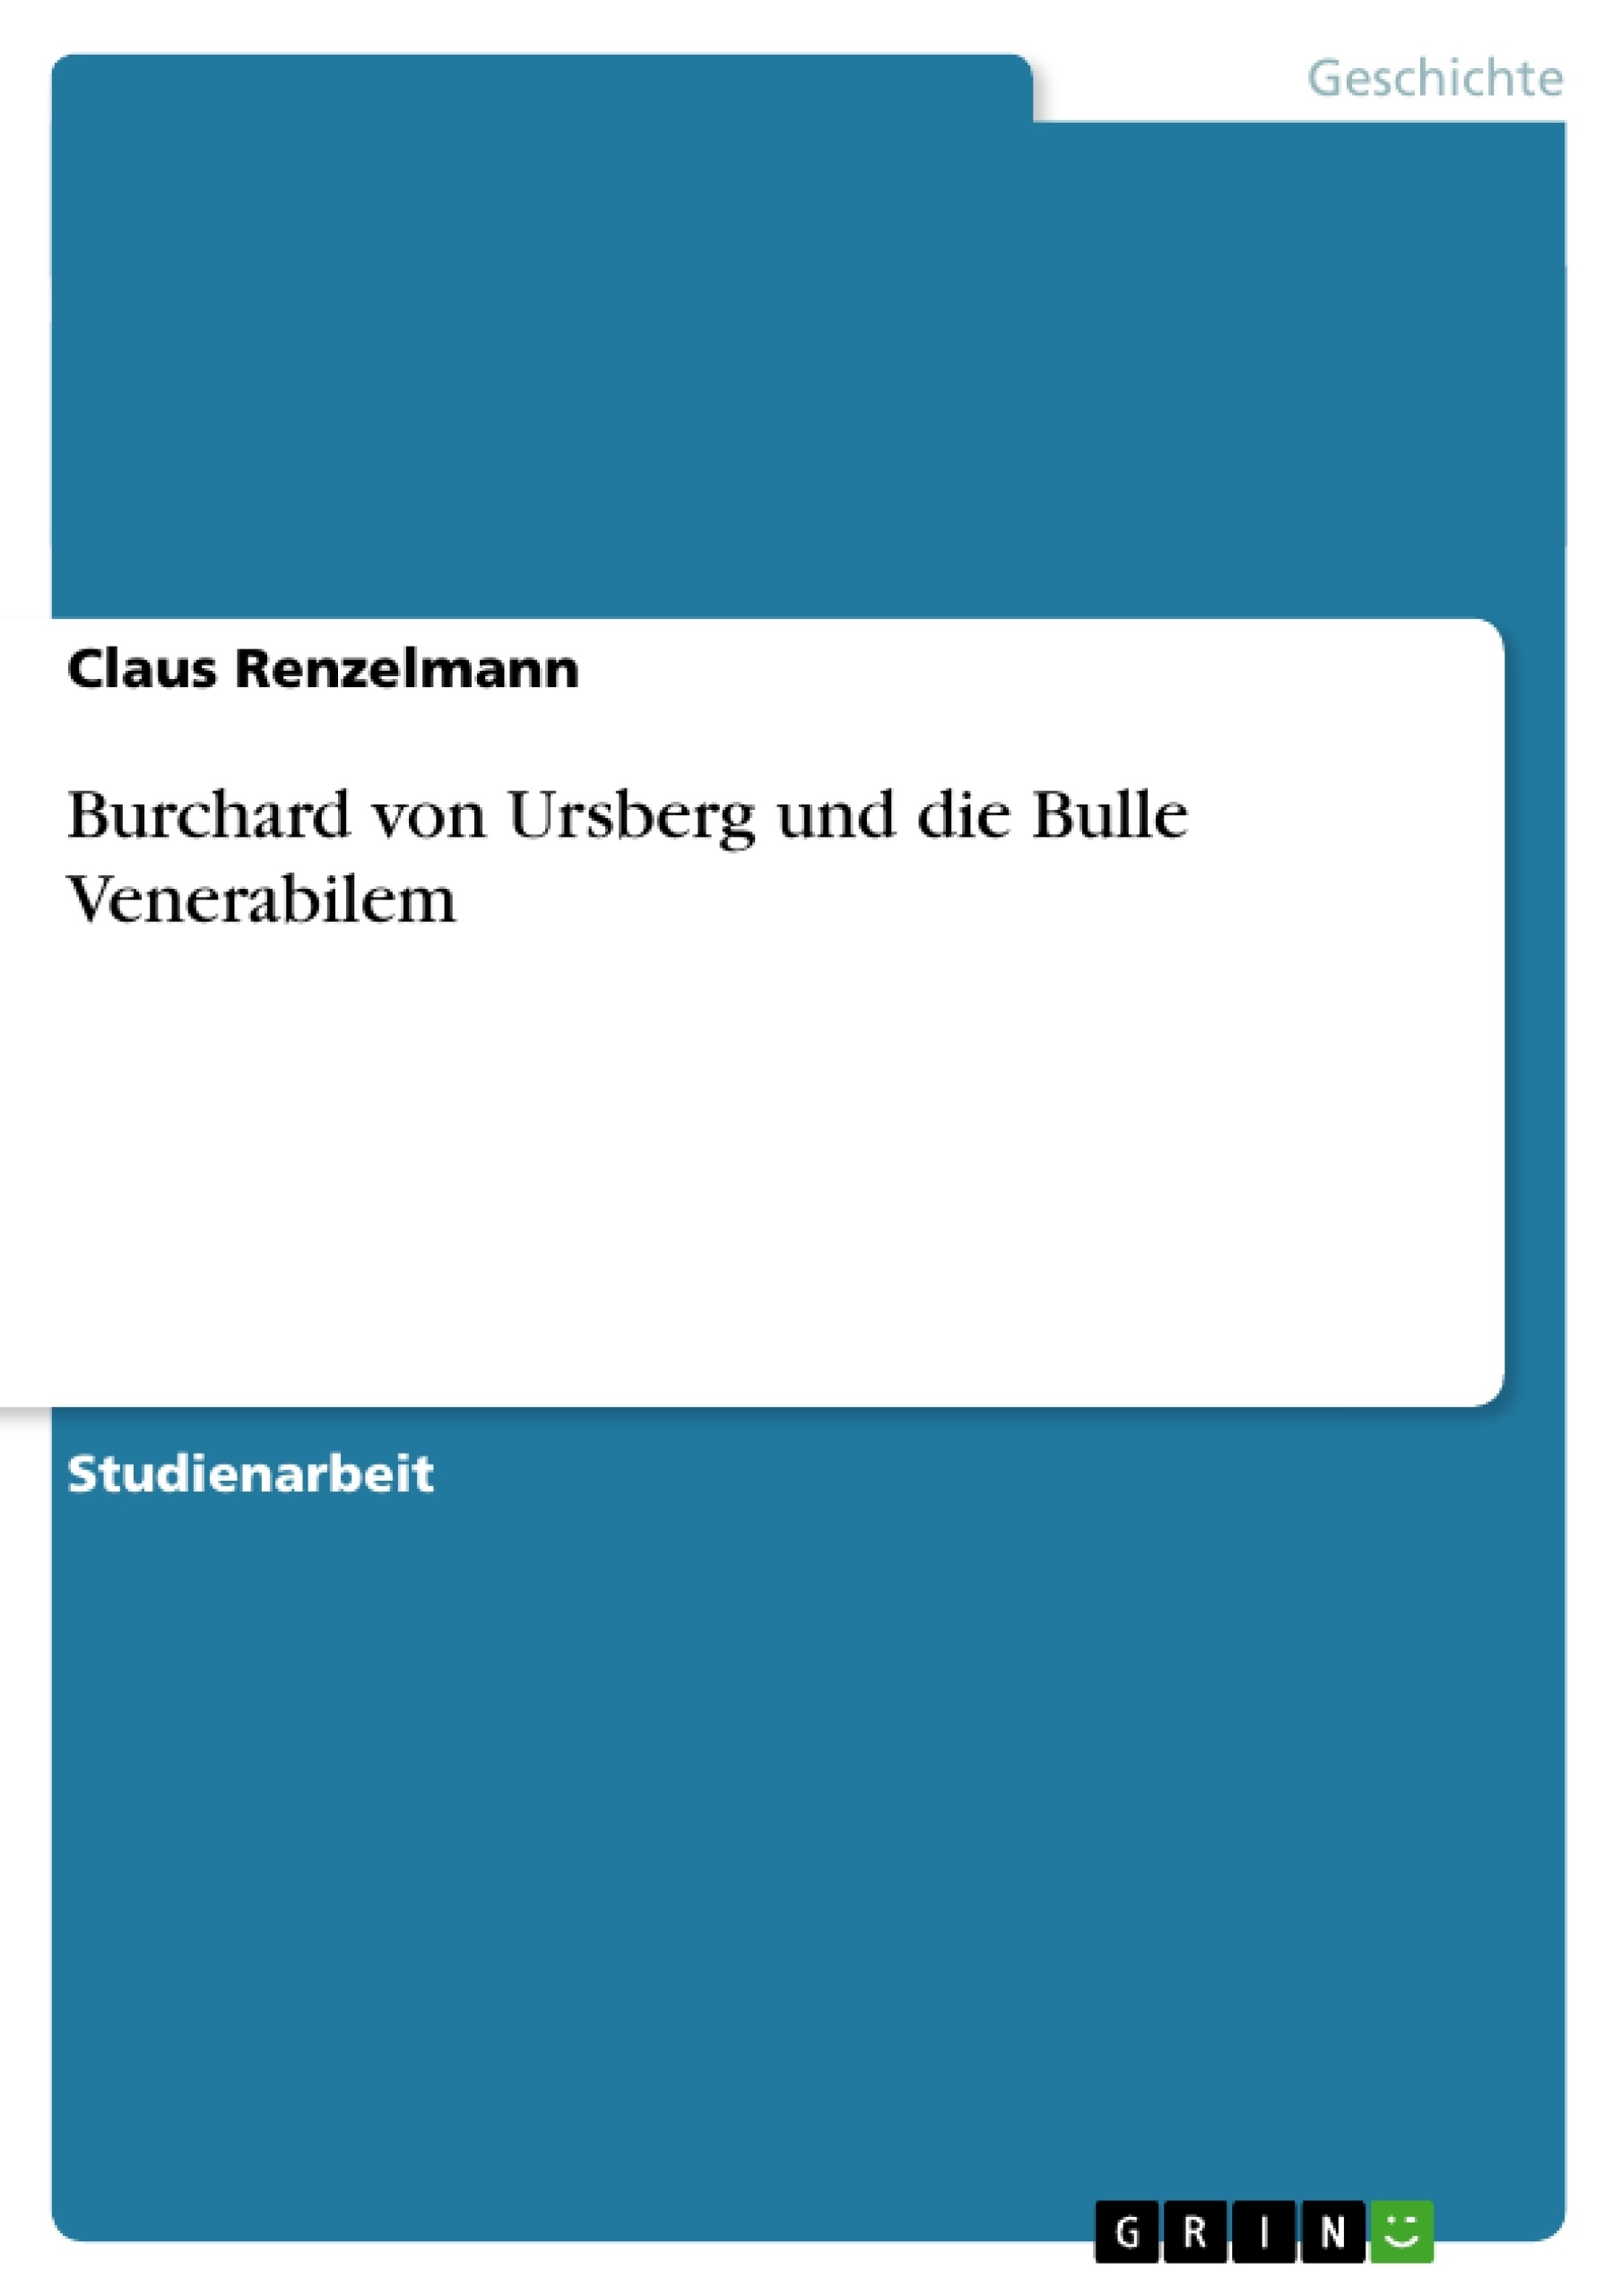 Title: Burchard von Ursberg und die Bulle Venerabilem